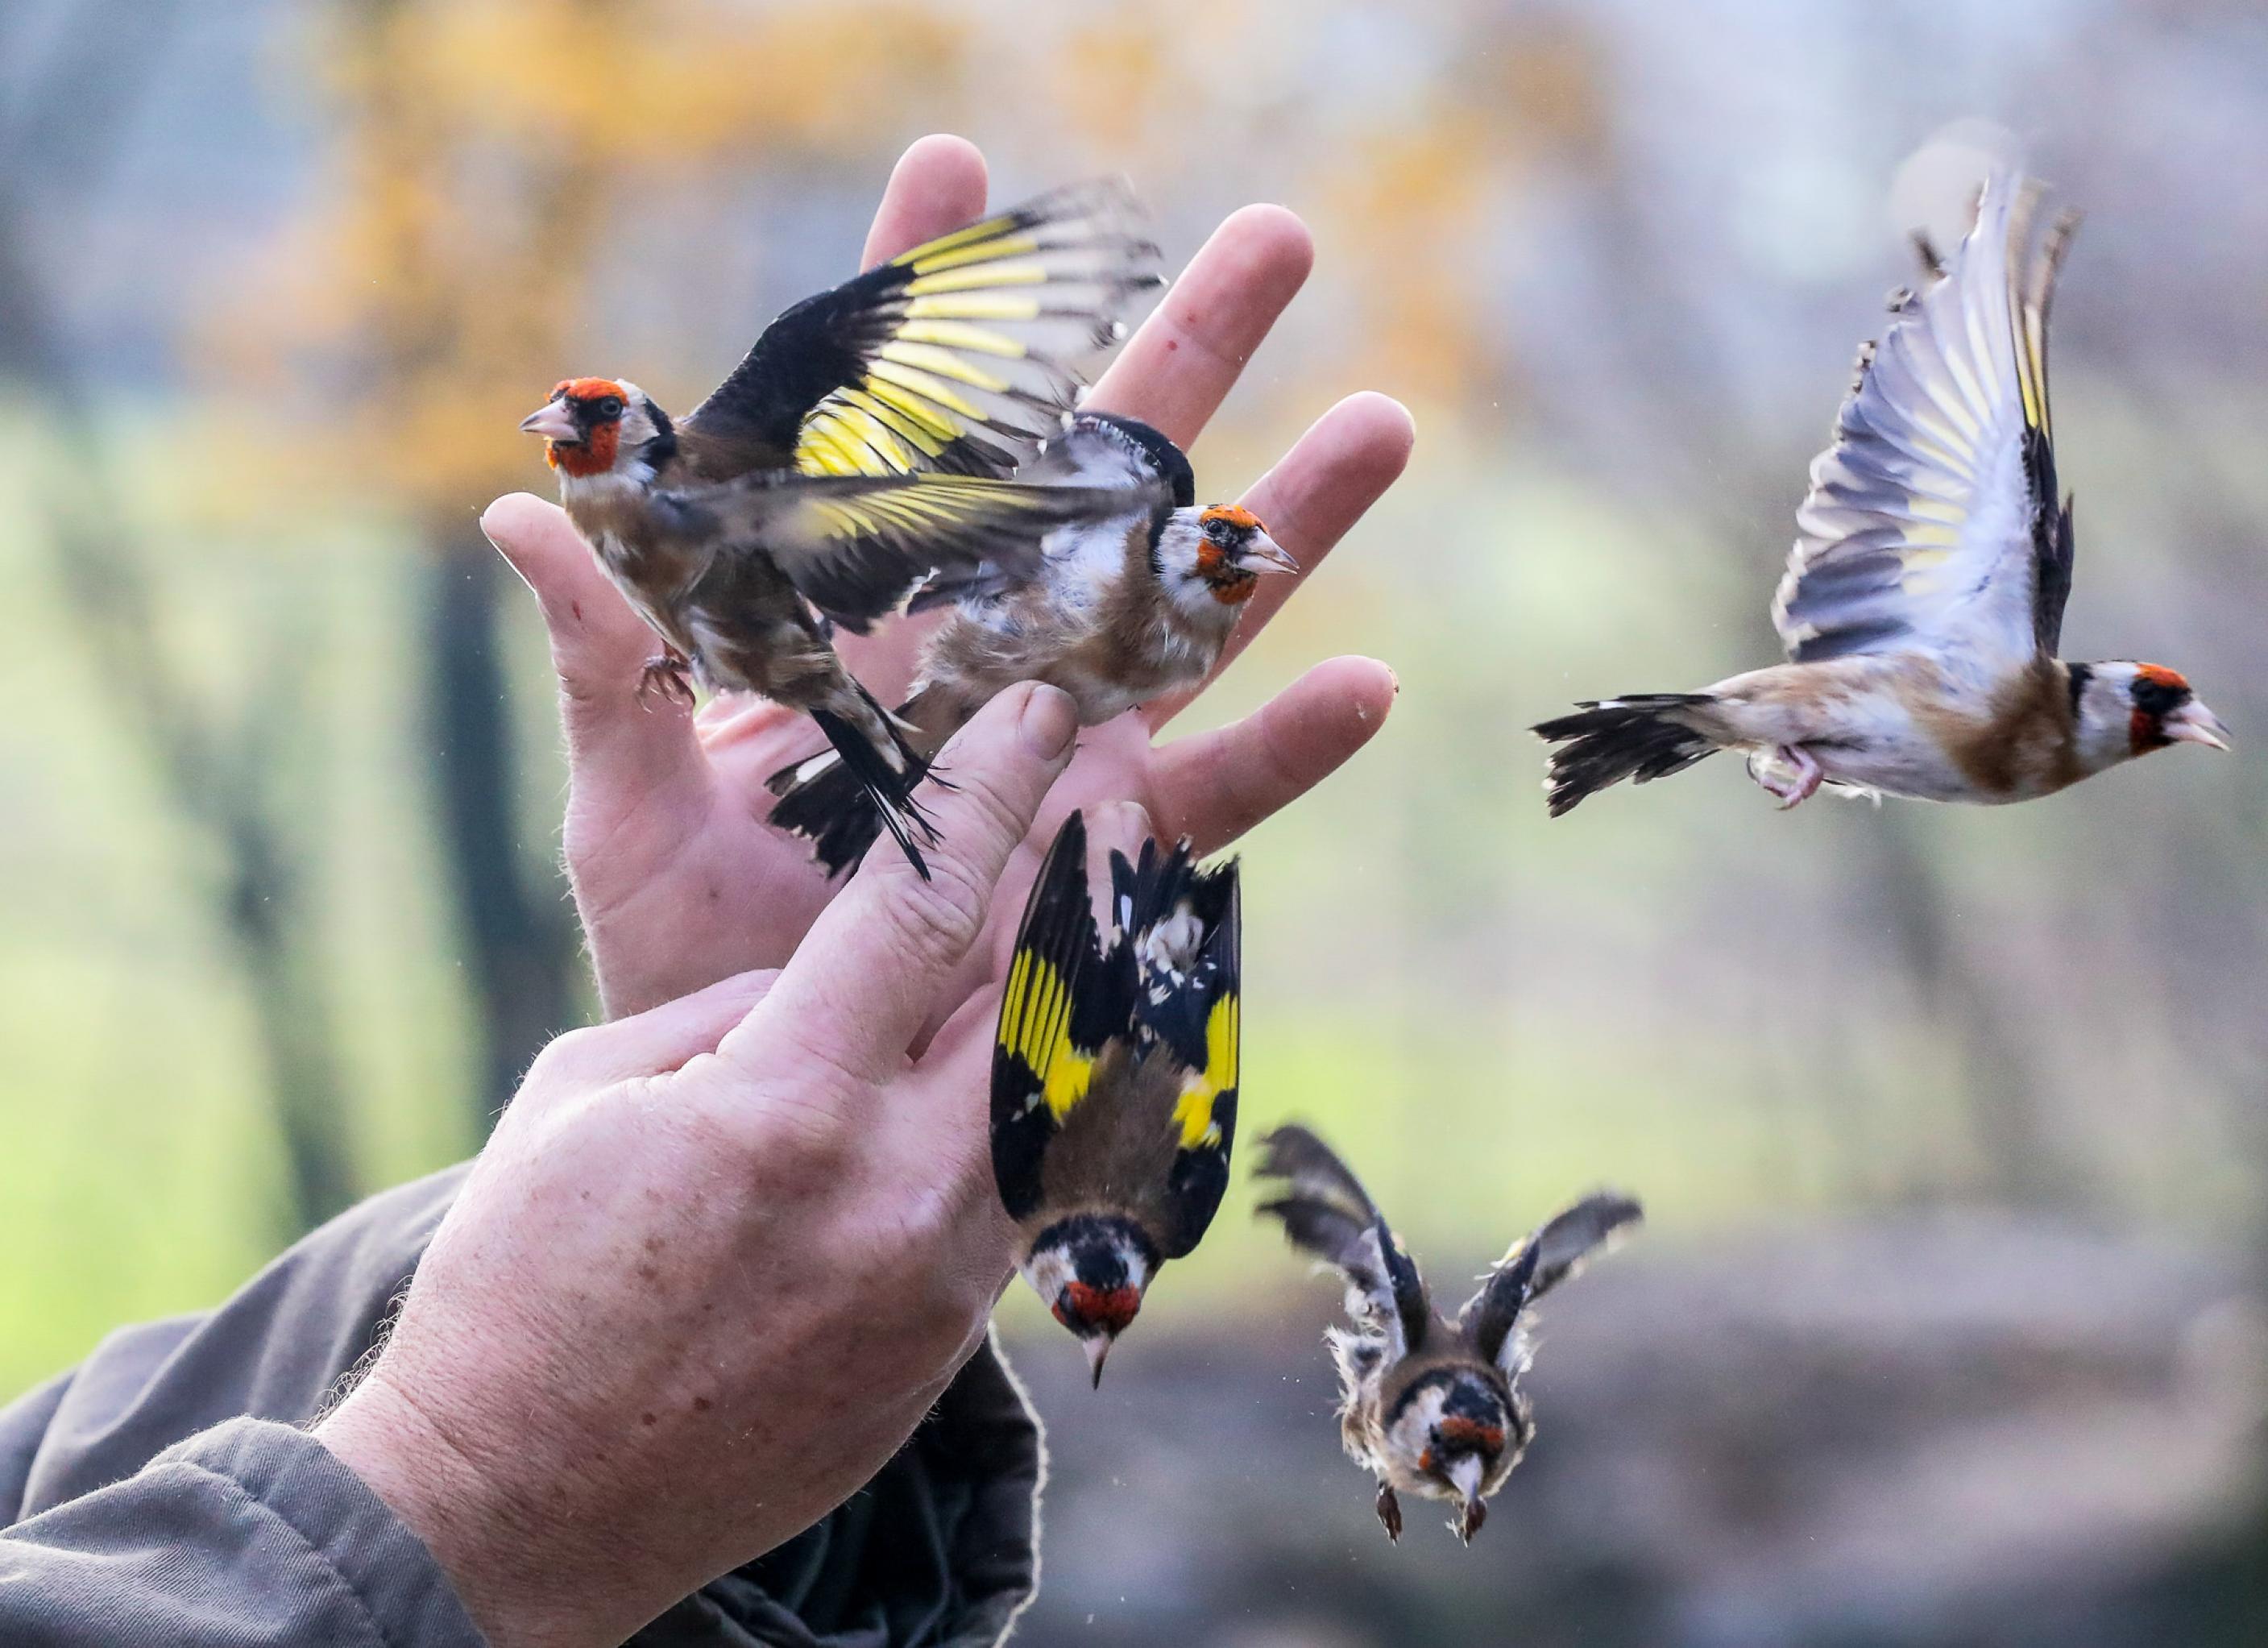 Zwei Hände lassen fünf bunte Vögel los, die in verschiedene Richtungen davonfliegen.